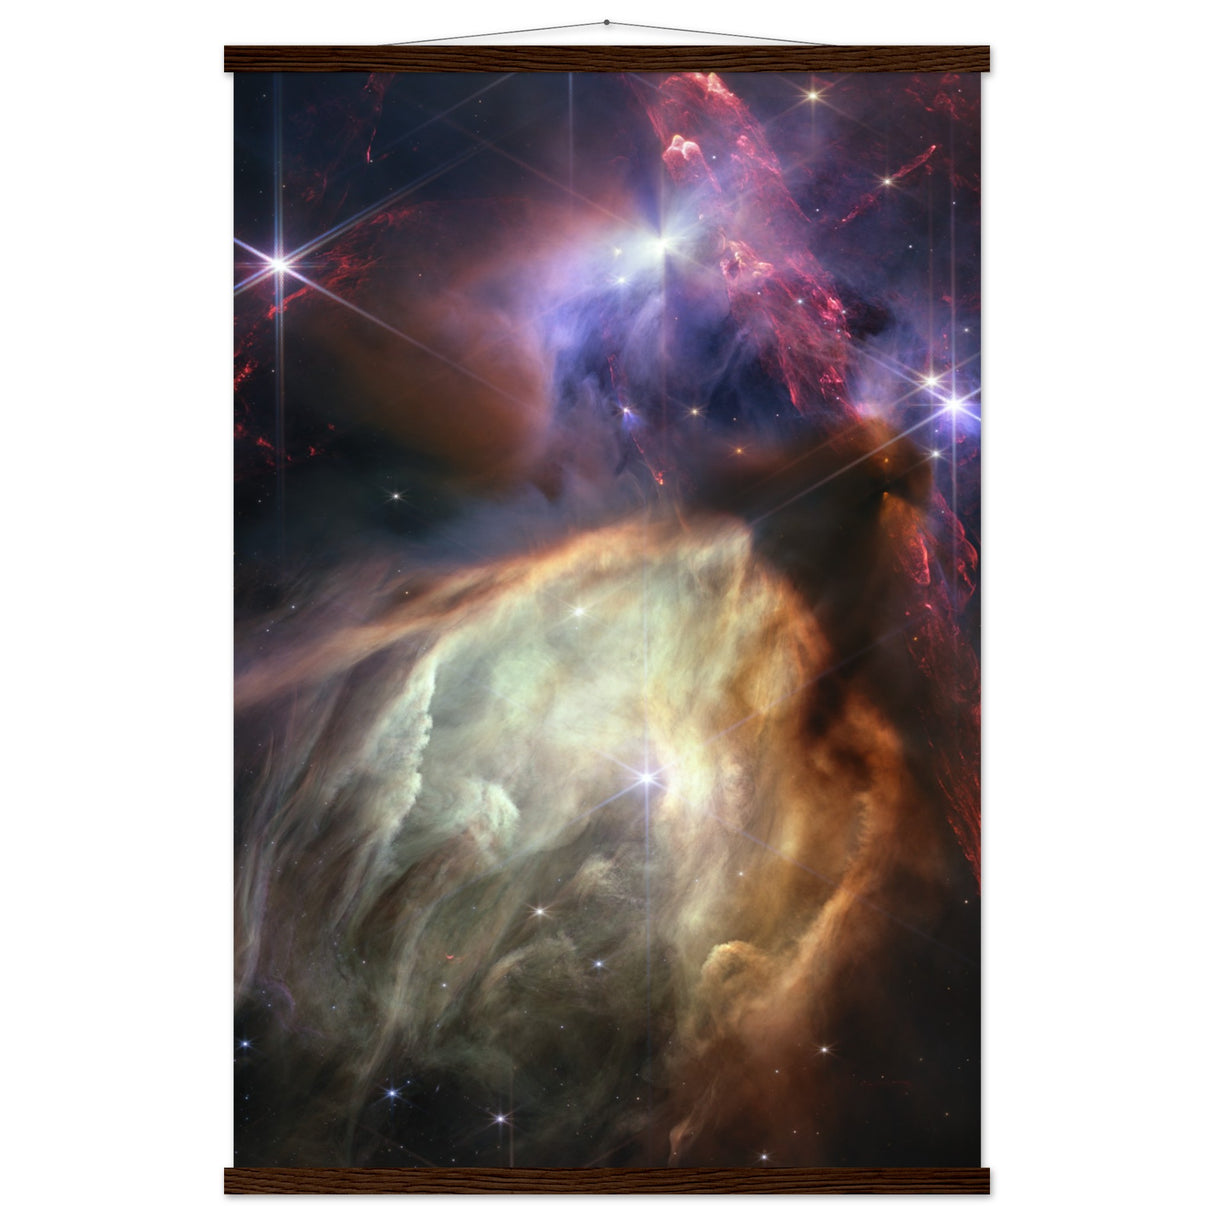 Sterngeburt im Rho Ophiuchi Wolkenkomplex (NIRCam Image)